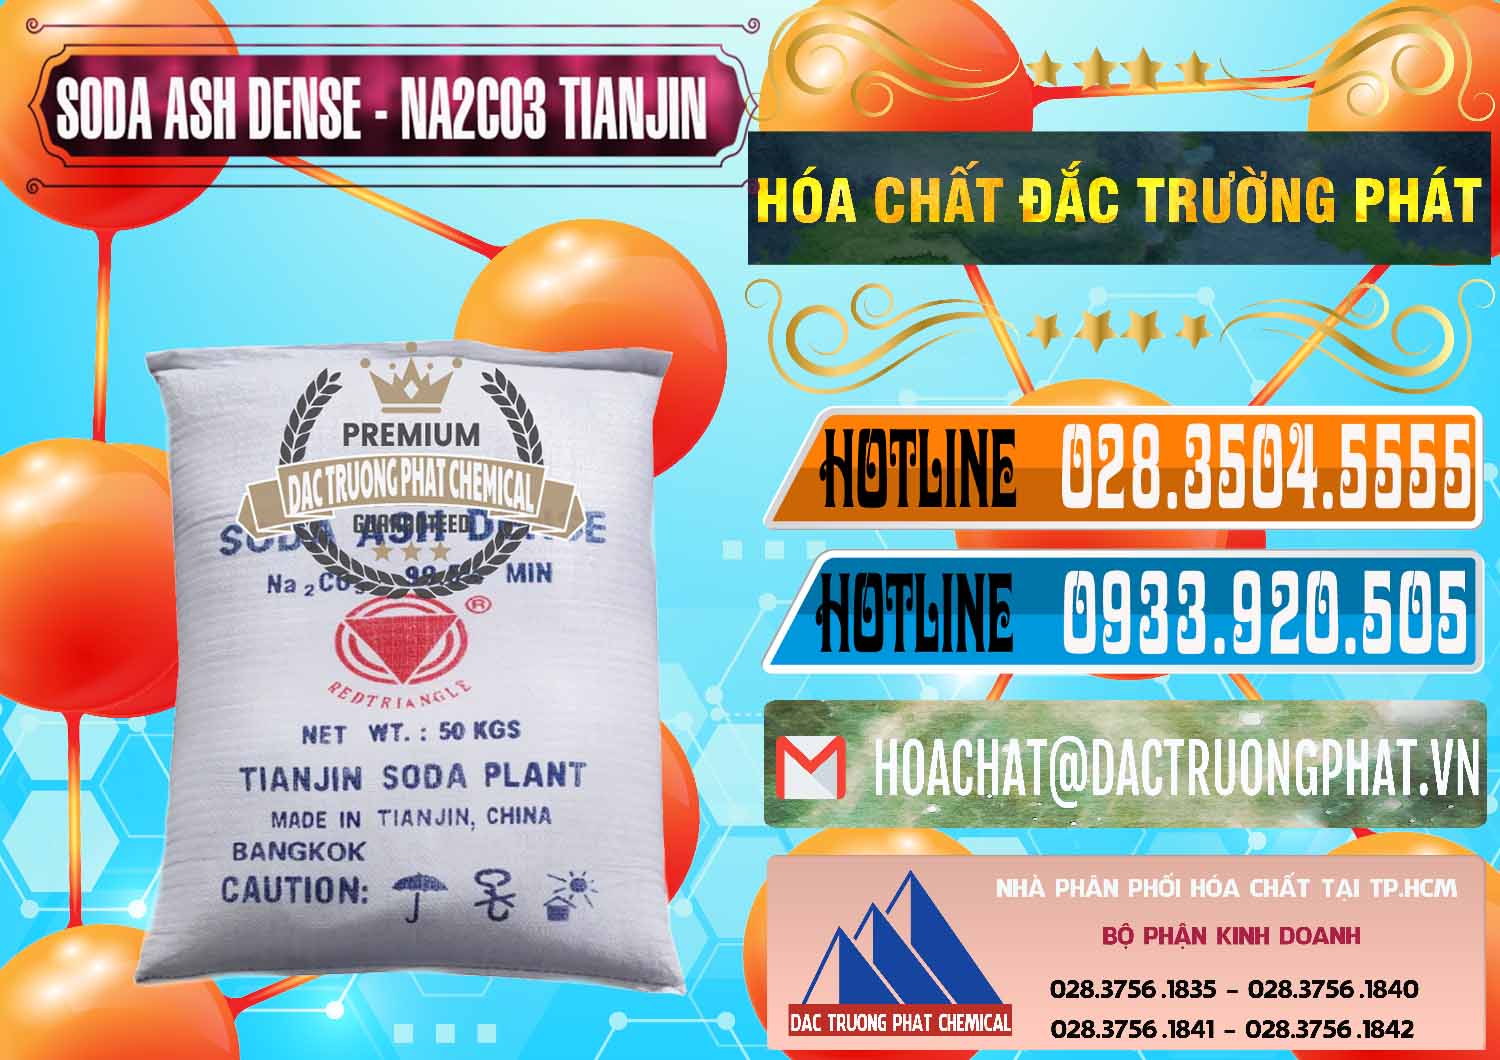 Cty chuyên nhập khẩu & bán Soda Ash Dense - NA2CO3 Tianjin Trung Quốc China - 0336 - Phân phối ( bán ) hóa chất tại TP.HCM - stmp.net